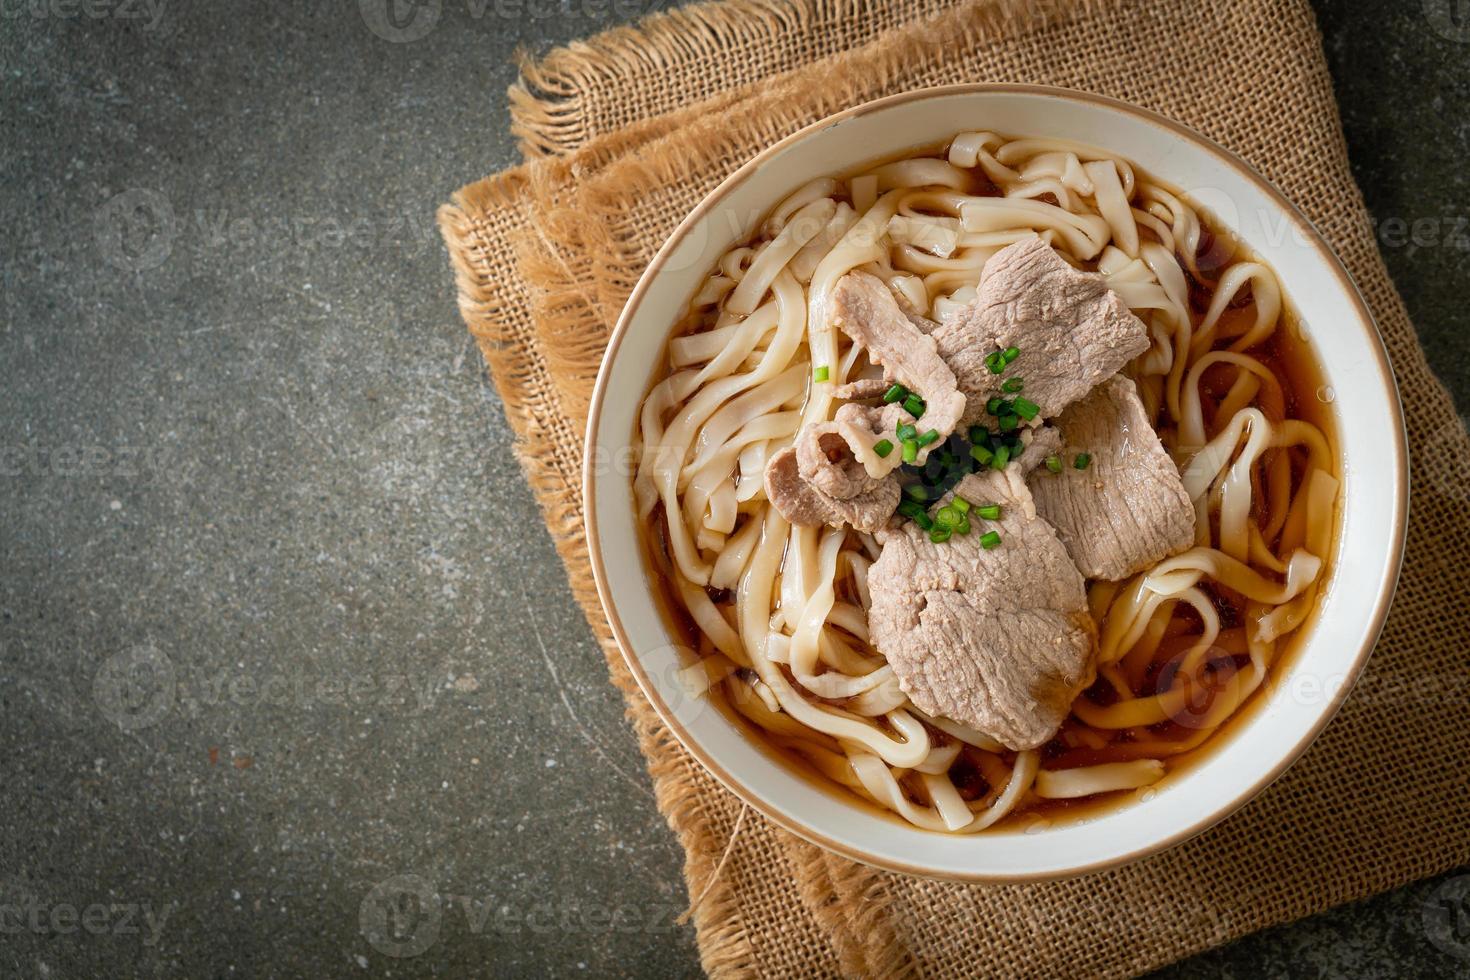 fideos udon ramen caseros con carne de cerdo en sopa de soja o shoyu foto